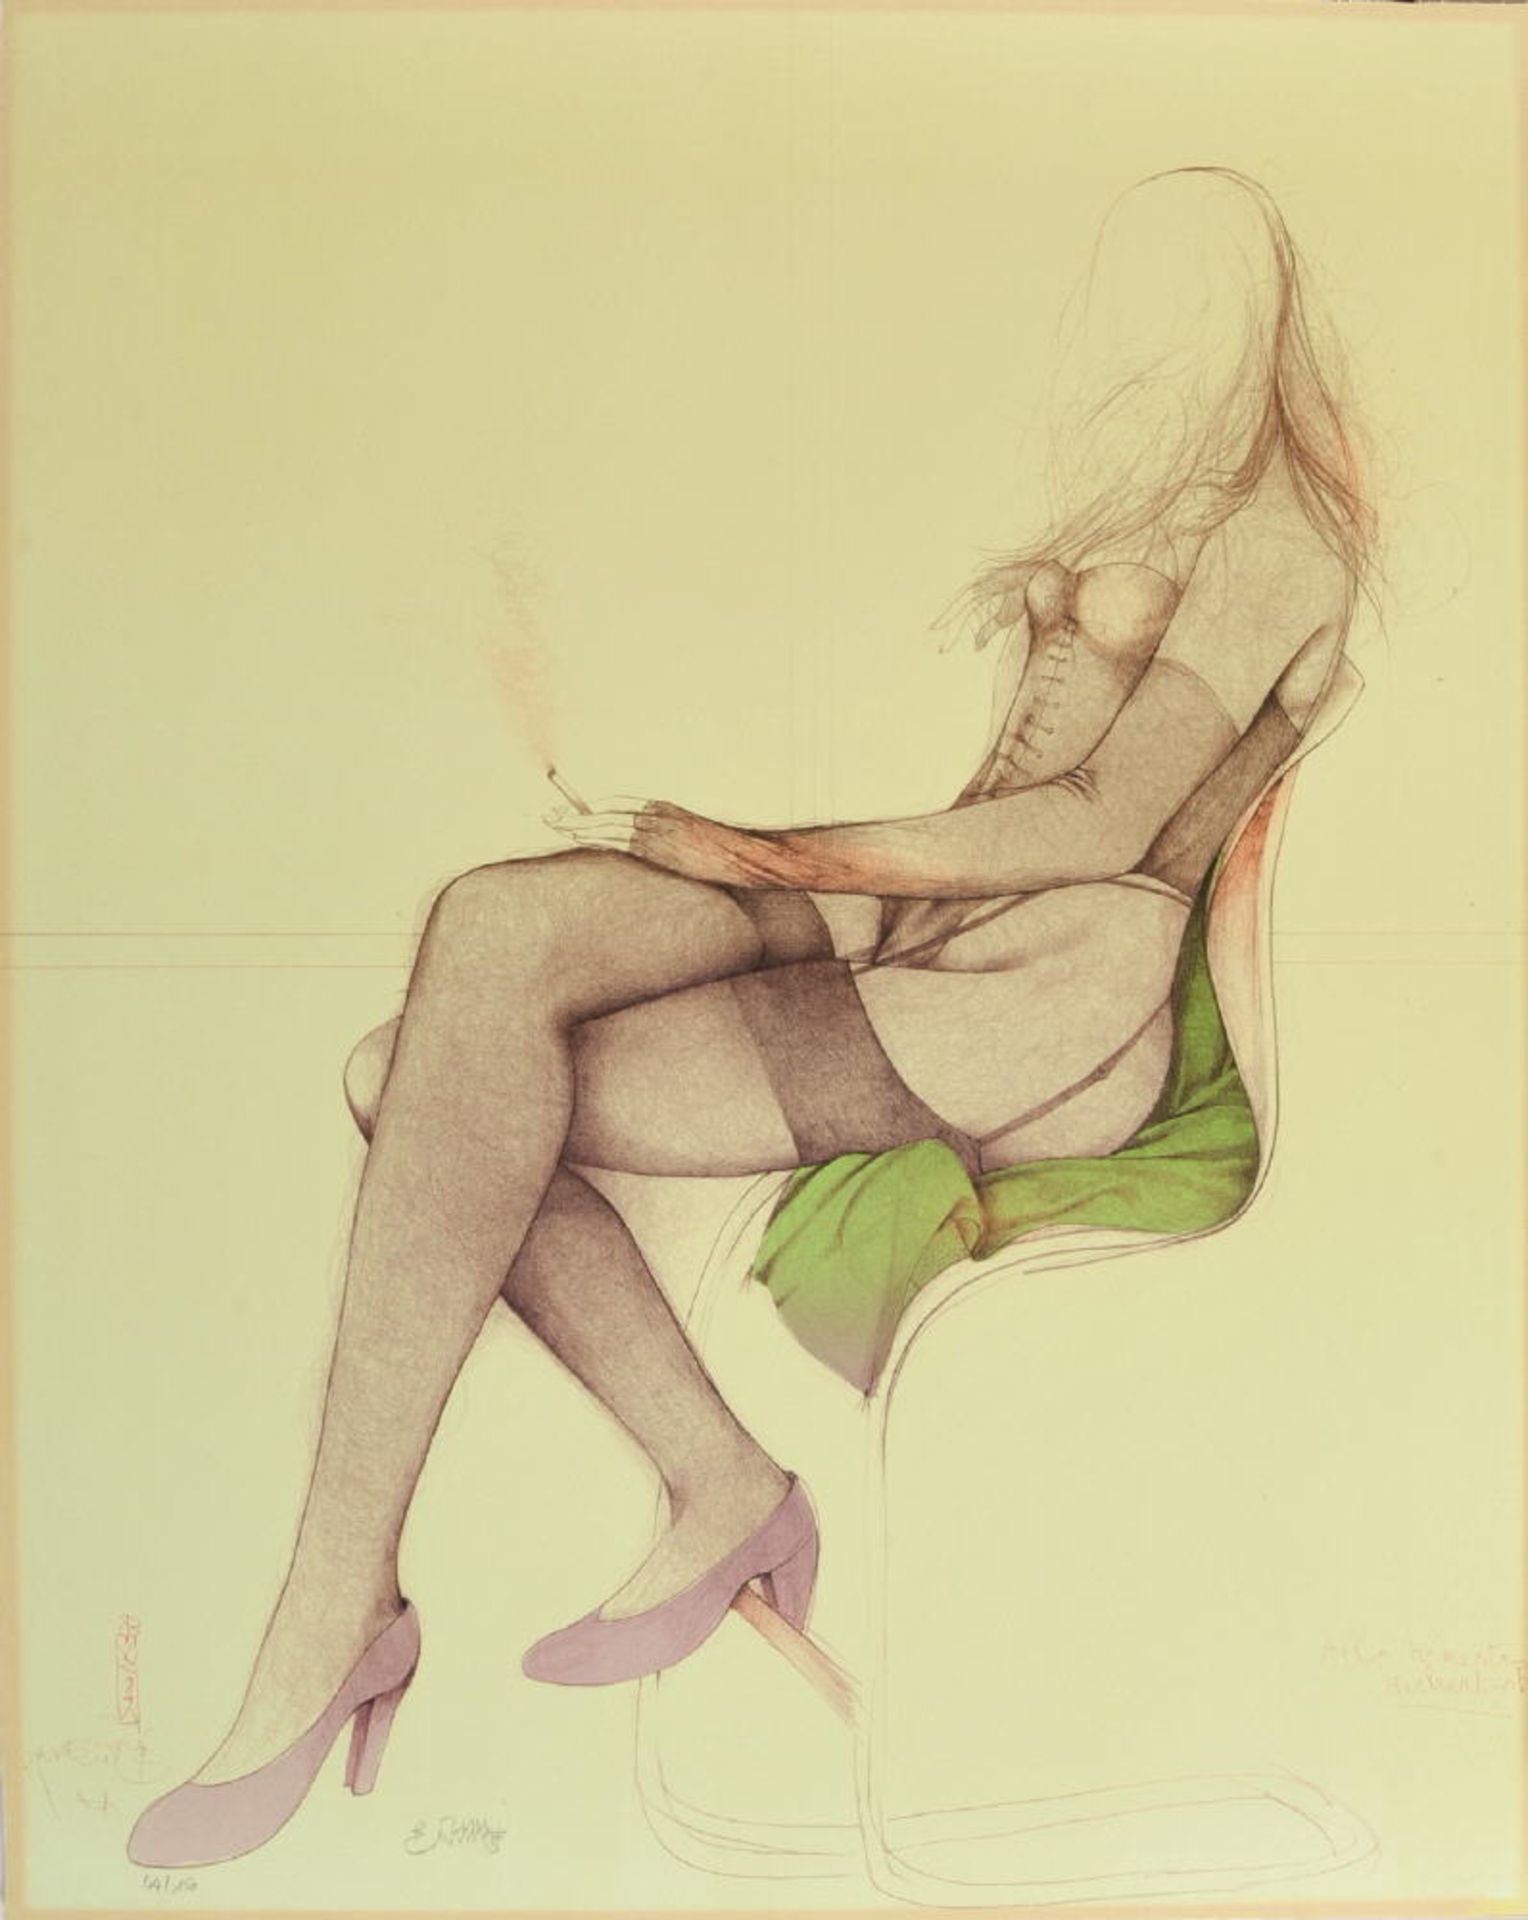 Bruni, Bruno, 1935 Gradara (Pesaro)Farblithographie, auf Karton montiert, 75 x 60 cm, " Rauchende